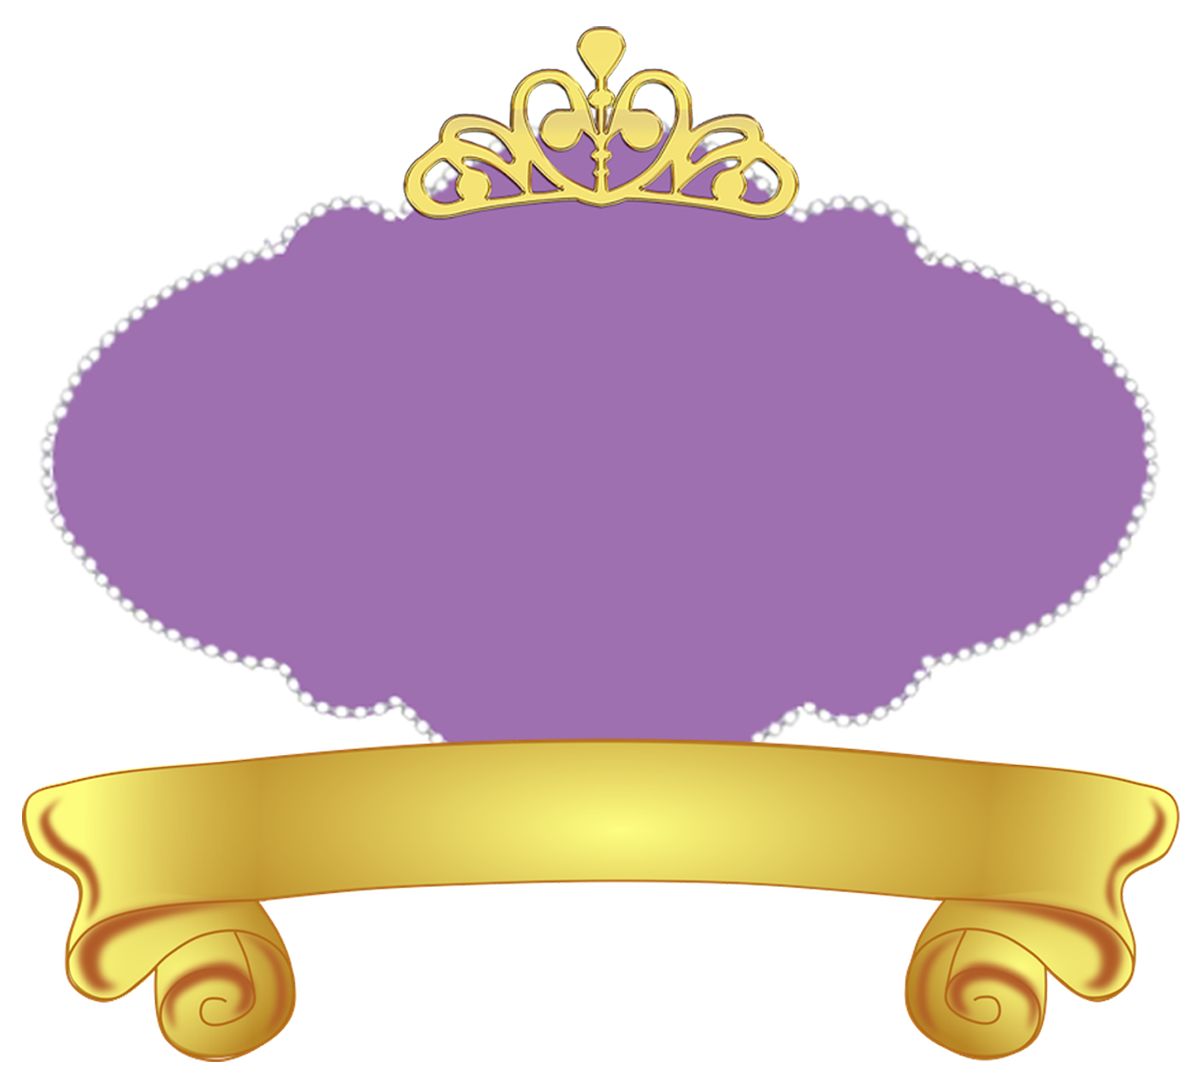 princesa-sofia-brazao-logo-limpo-05